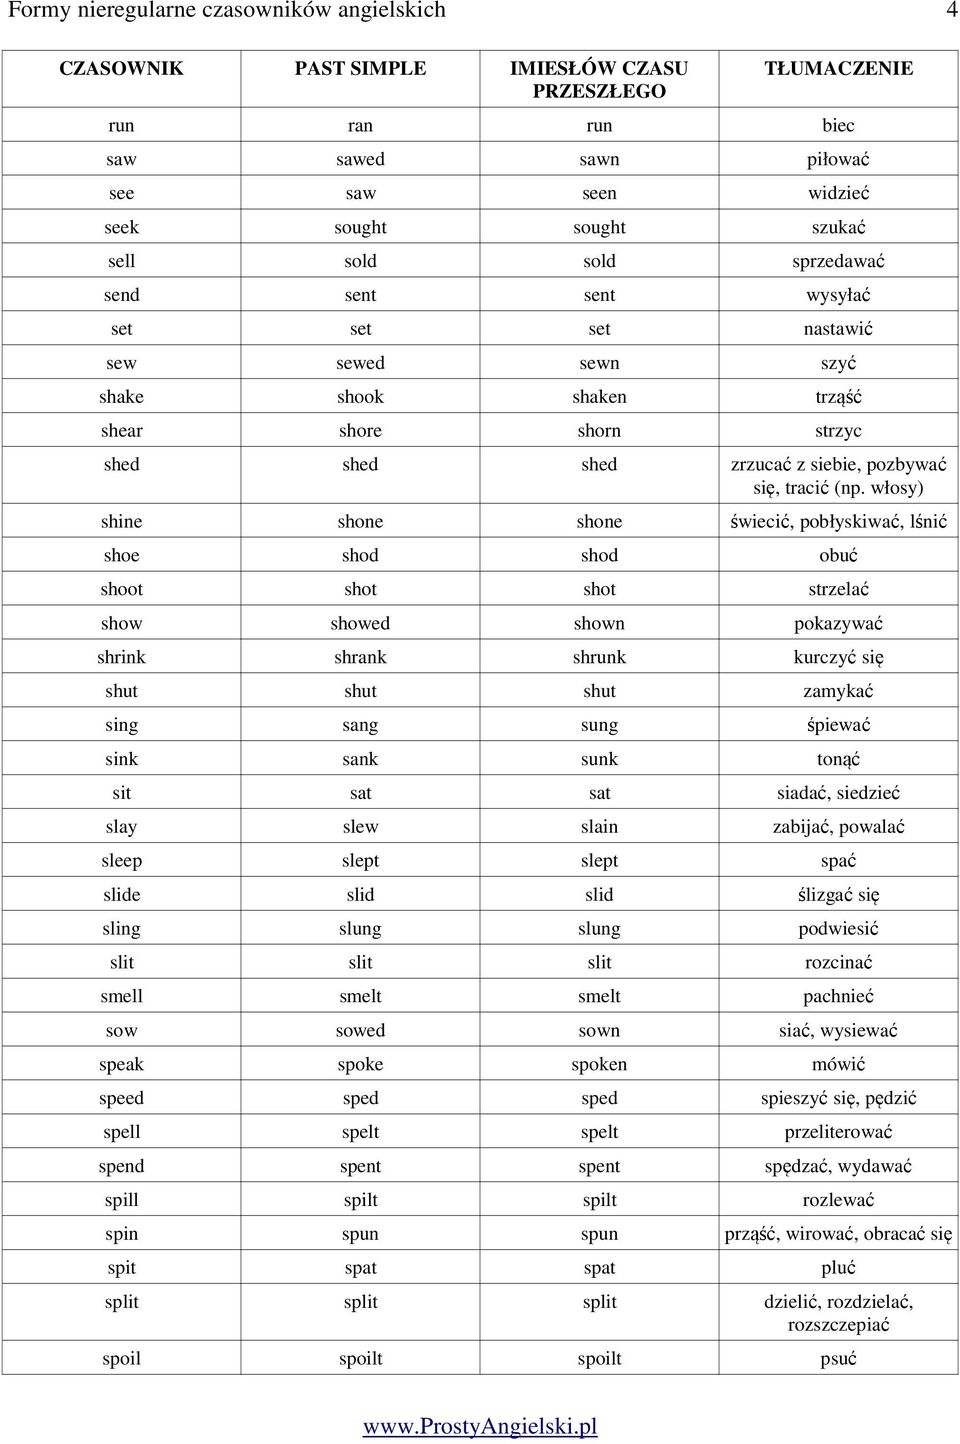 Formy nieregularne czasowników angielskich 1 - PDF Darmowe pobieranie